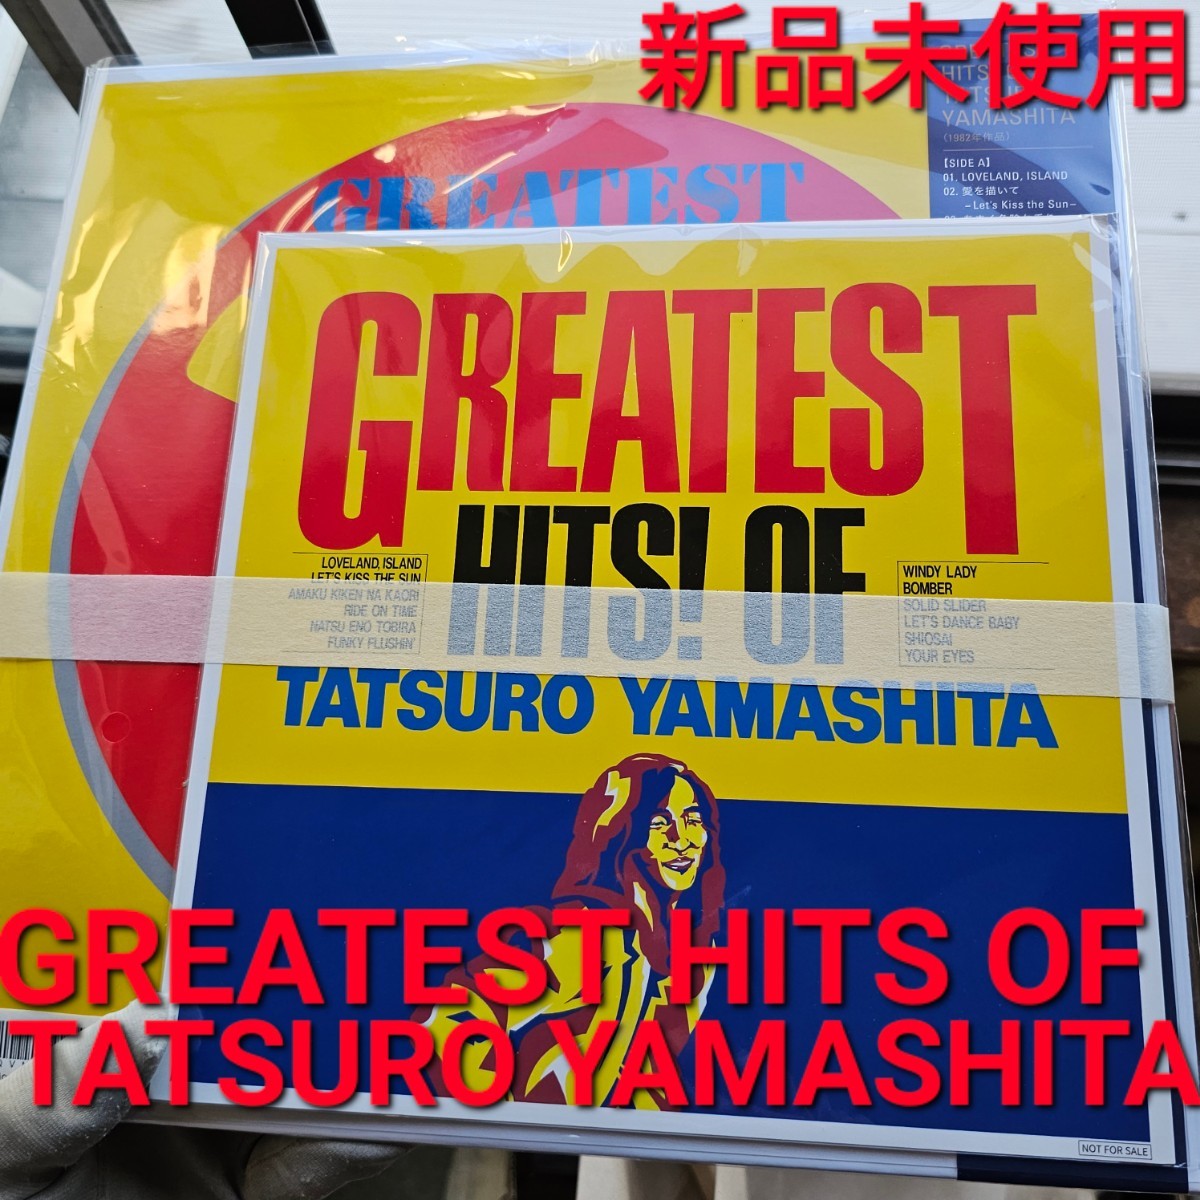 山下達郎 GREATEST HITS! OF TATSURO YAMASHITA 音楽 曲 レコード 限定 Amazon アマゾン ロック ポップス 山下 達郎 歌 人気